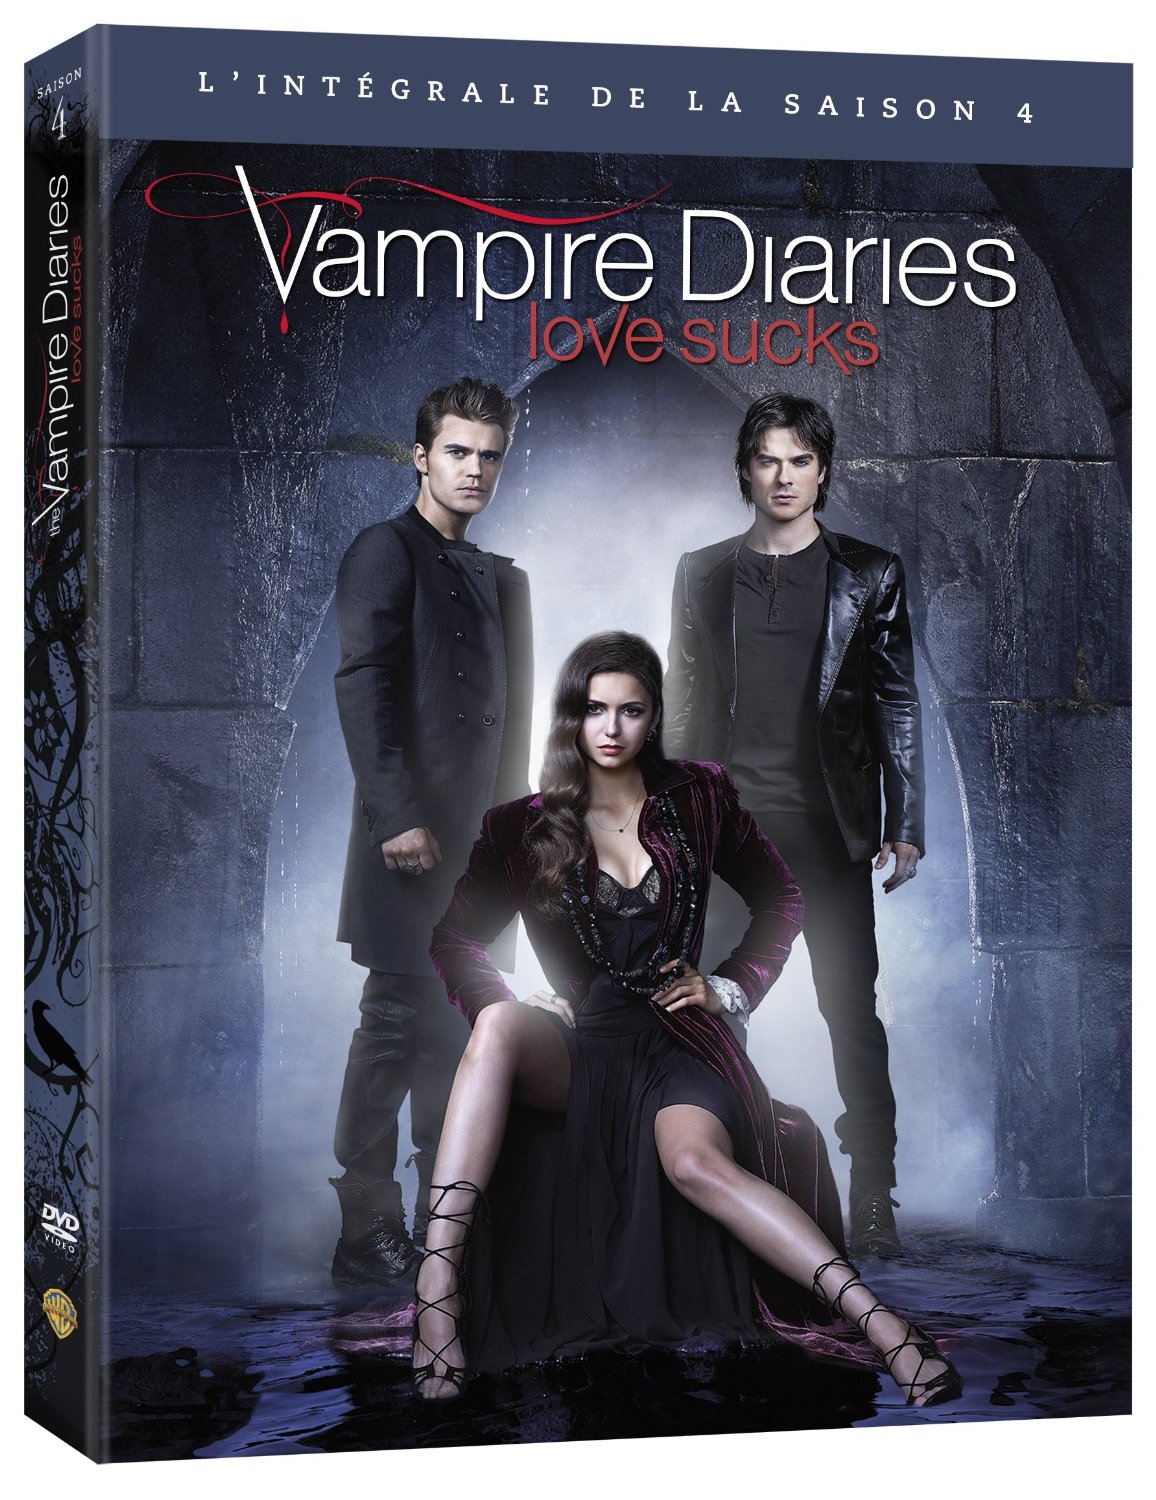 Sortie du coffret DVD intégrale 8 saisons de Vampire Diaries le 22 novembre